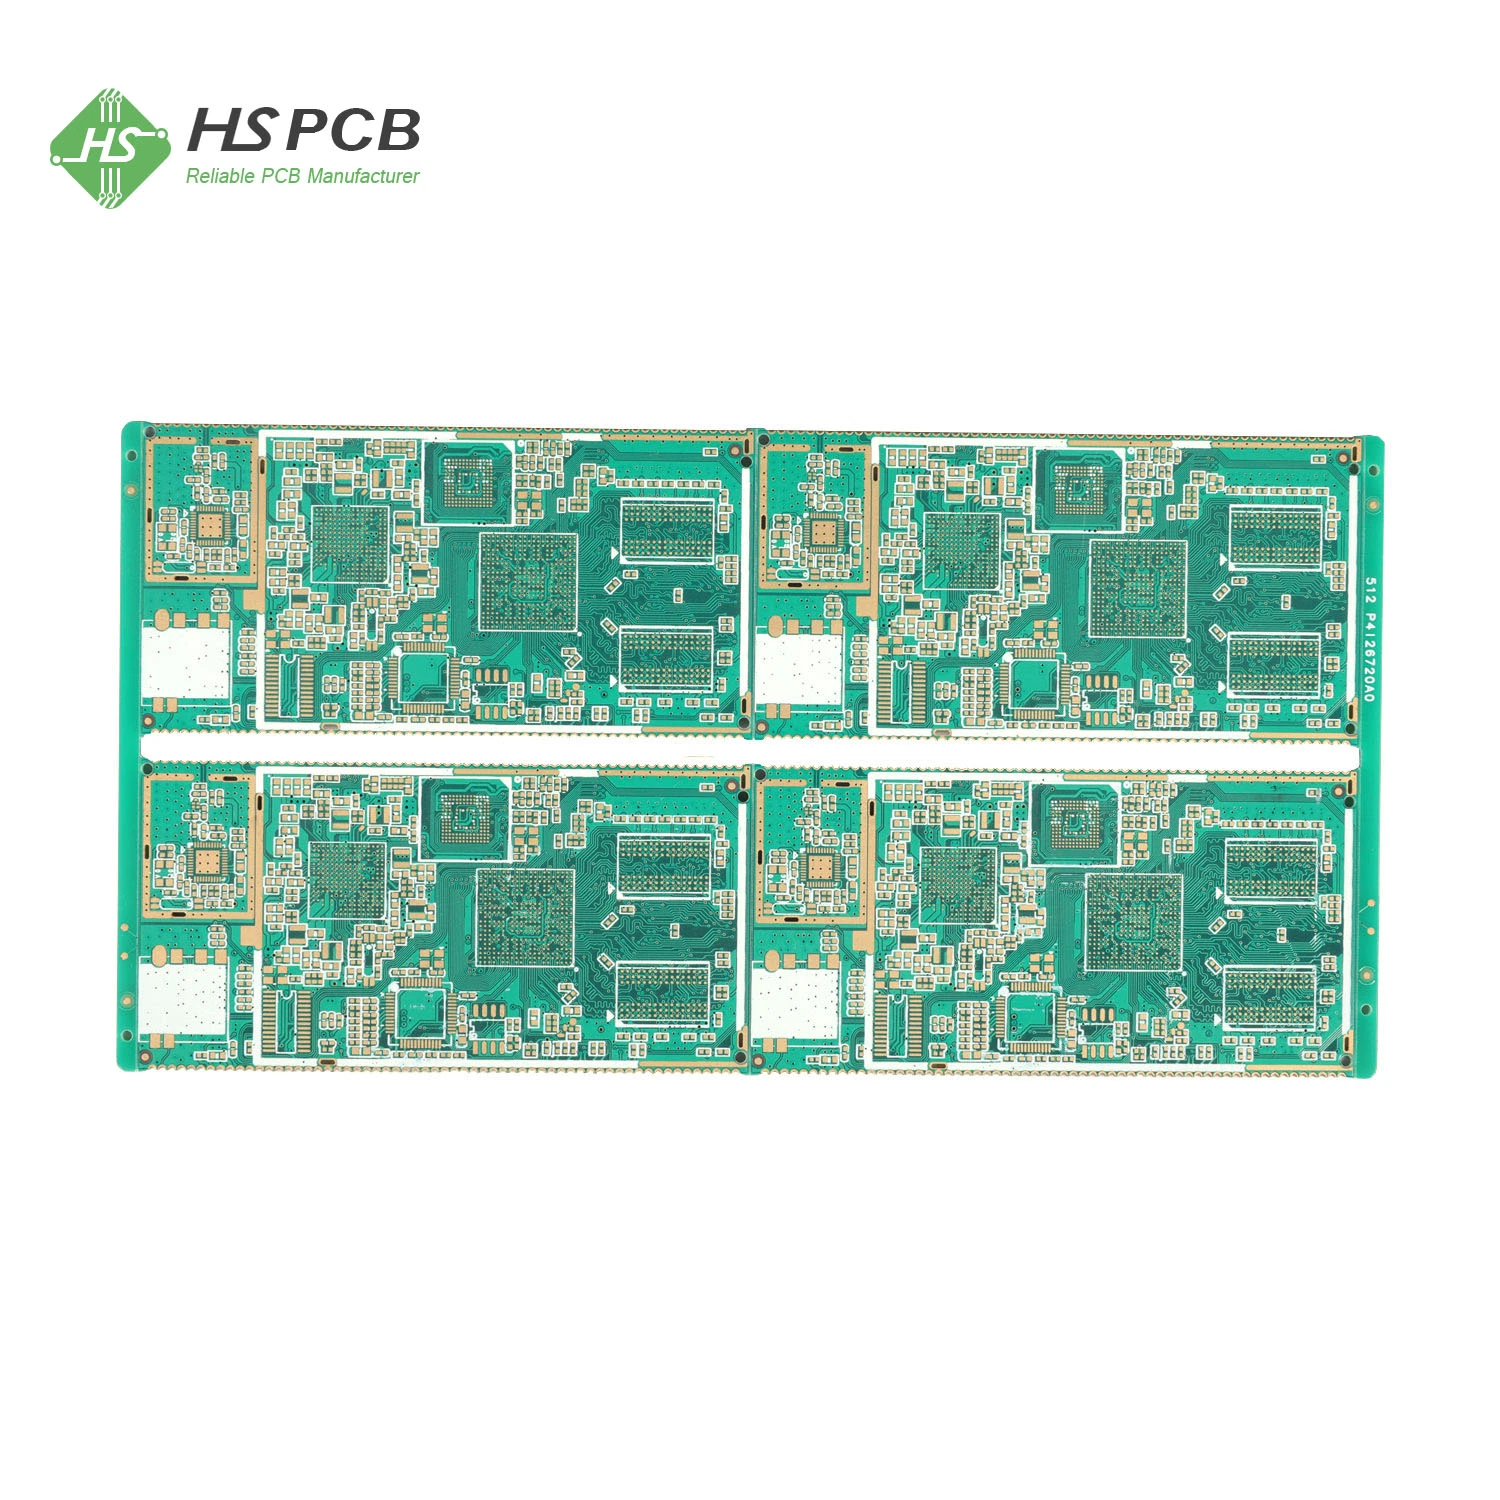 Medio orificio PTH mediante conexión de epoxi/resina y placa de PCB multicapa tapada Fabricante